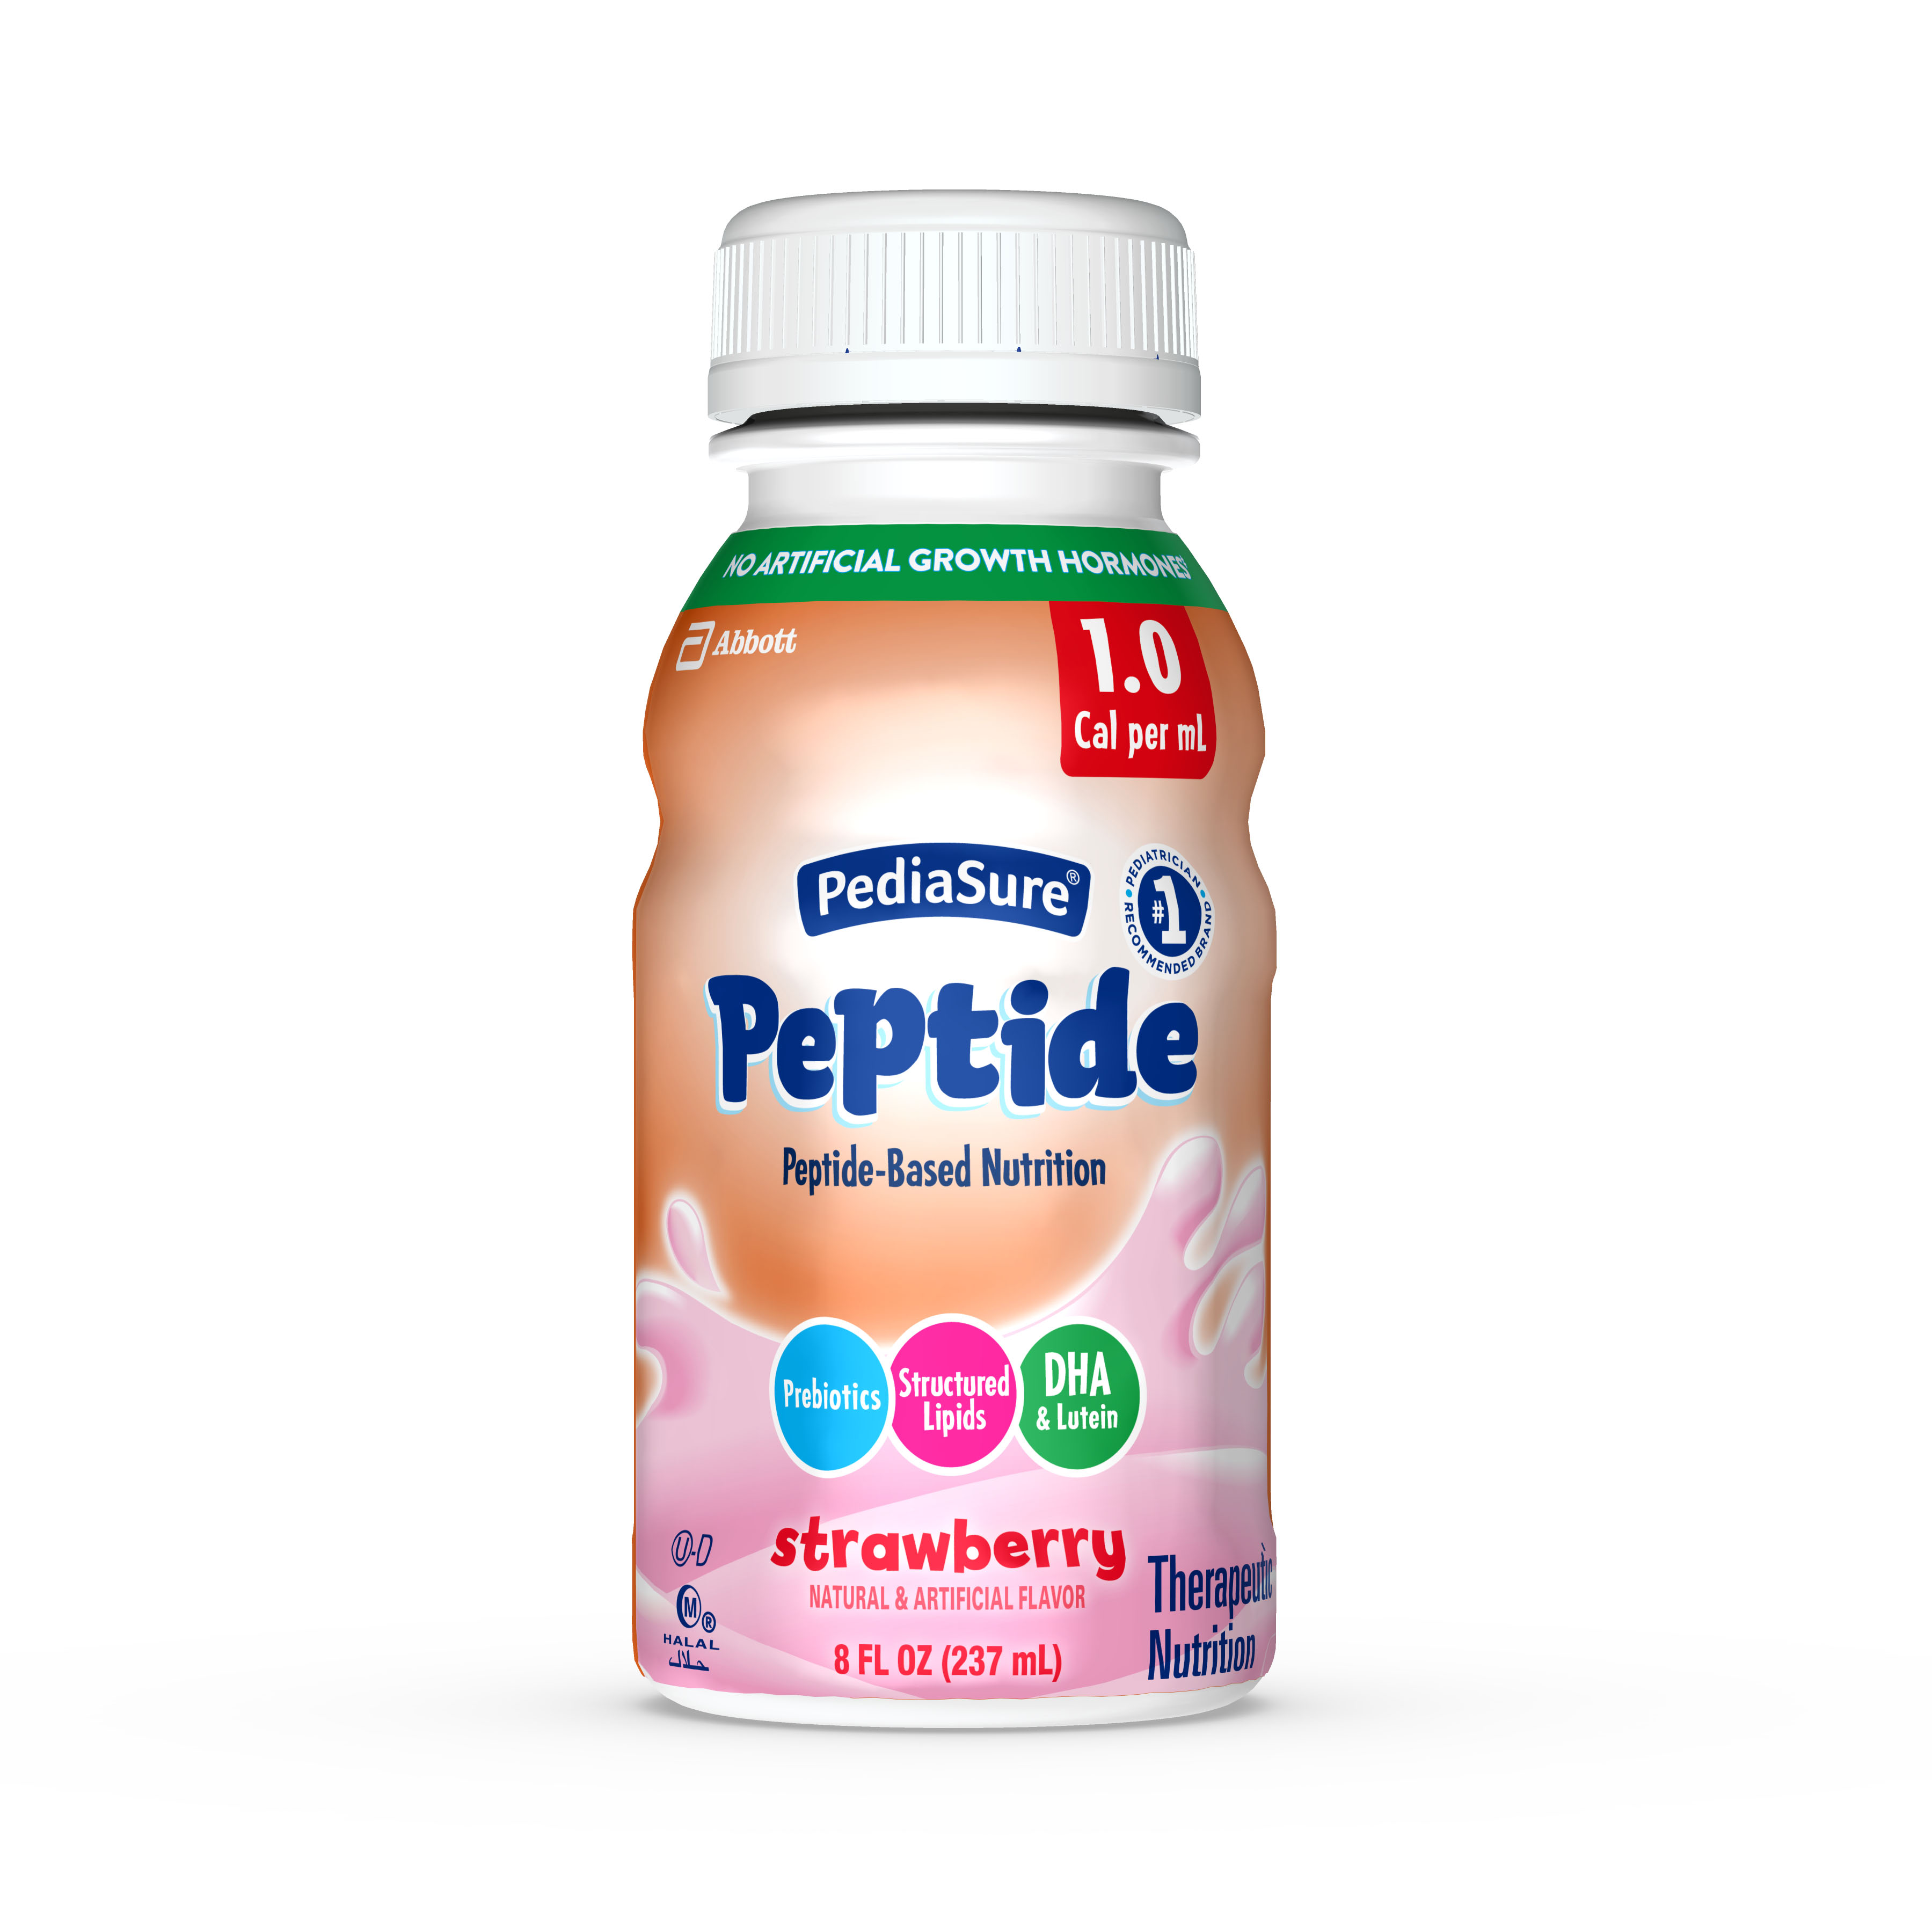 PediaSure® Strawberry Peptide 1.0 Cal